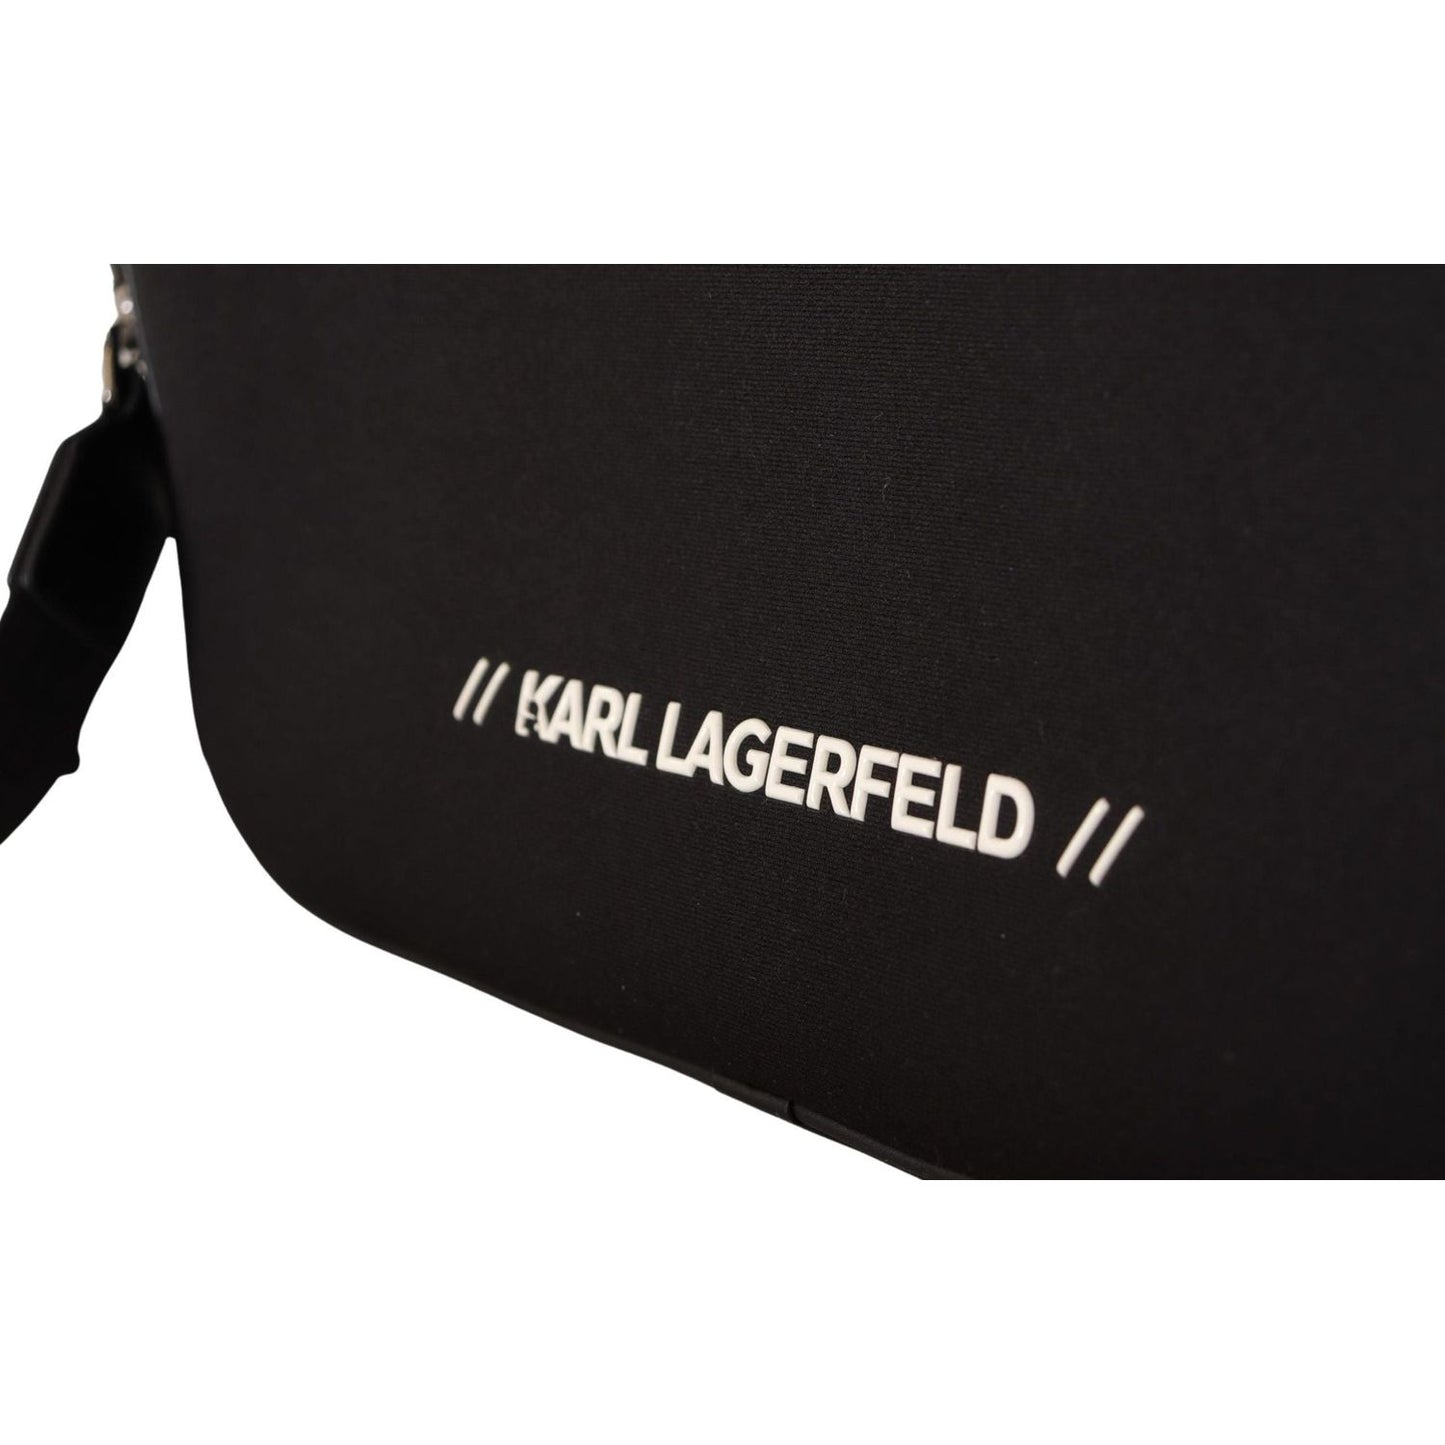 Karl Lagerfeld Sleek Nylon Laptop Crossbody Bag For Sophisticated Style black-nylon-laptop-crossbody-bag IMG_7550-scaled-22de7ff1-526.jpg